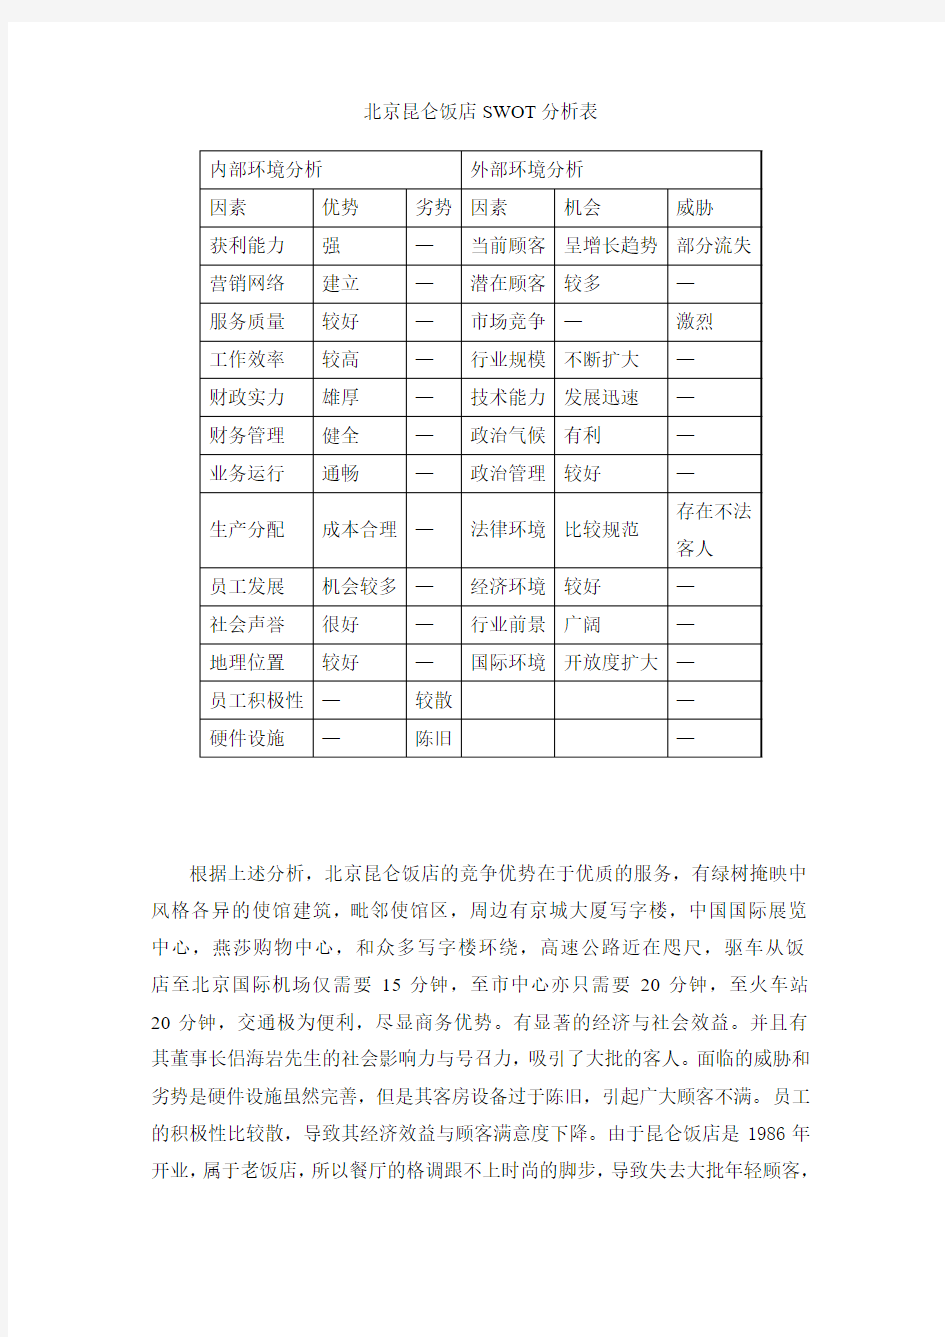 北京昆仑饭店SWOT分析表